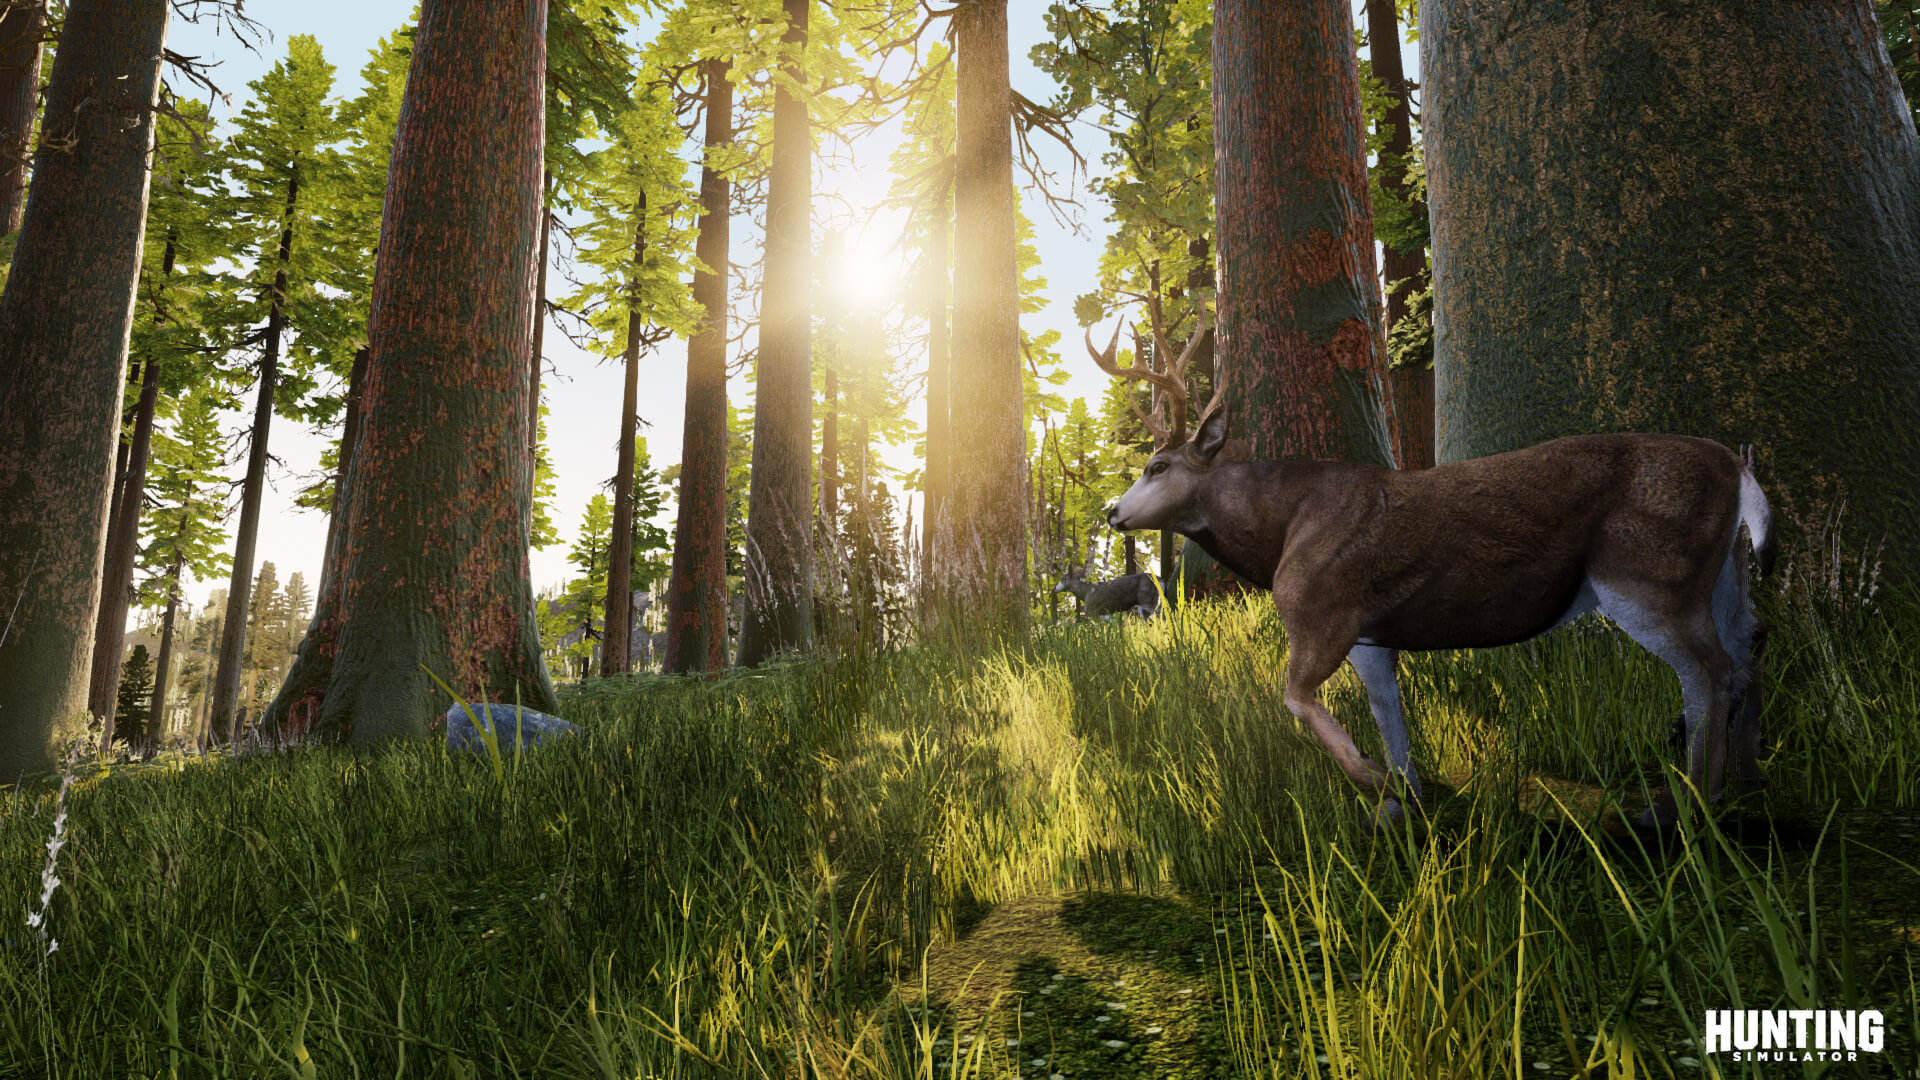 Hunting Simulator traz muita diversidade com dezenas de animais, armas, ambientes e centenas de missões no modo Campanha.